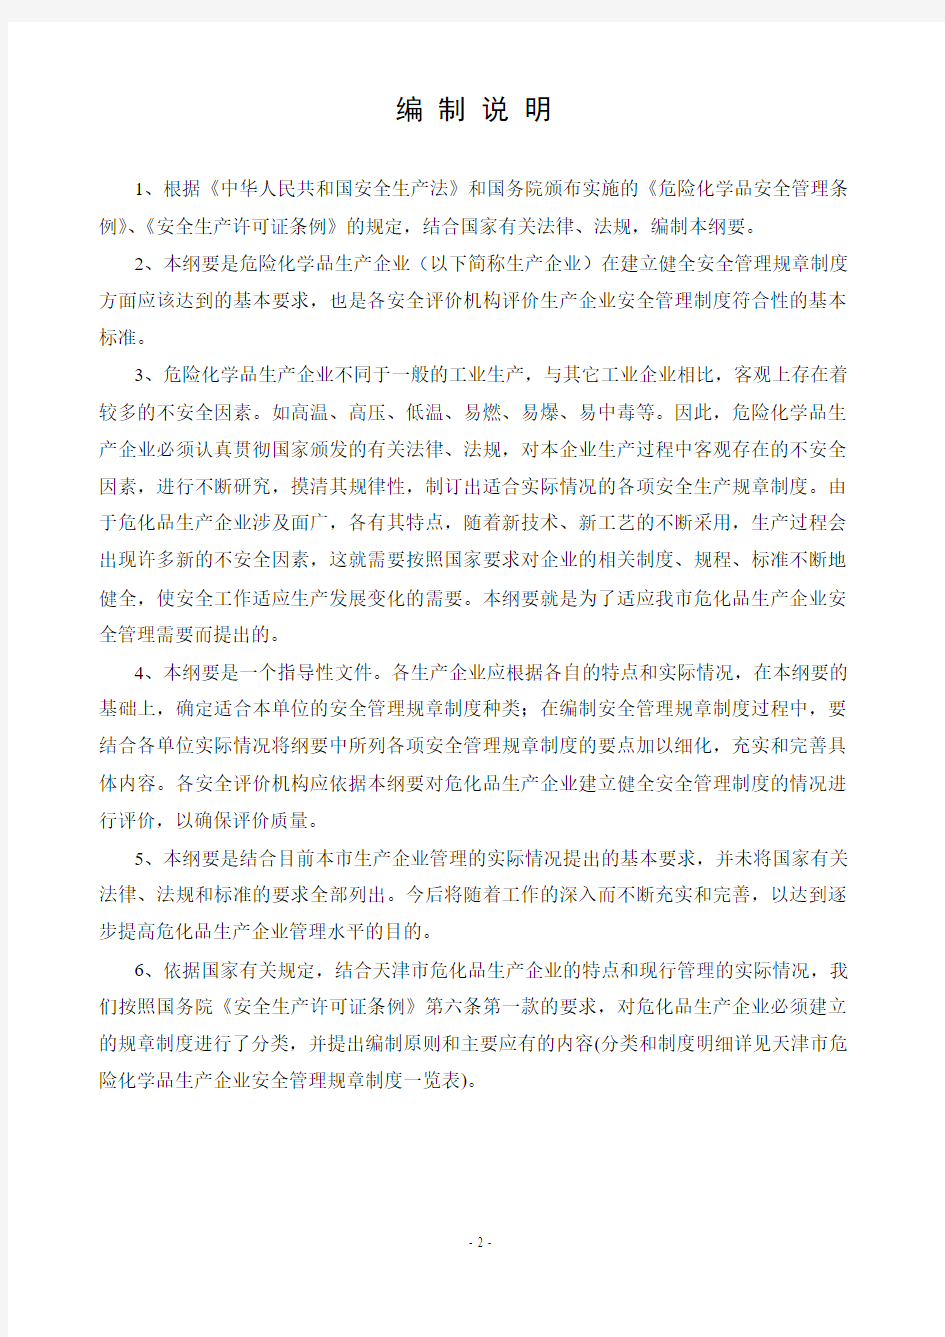 天津市危险化学品生产企业安全管理规章制度编制纲要